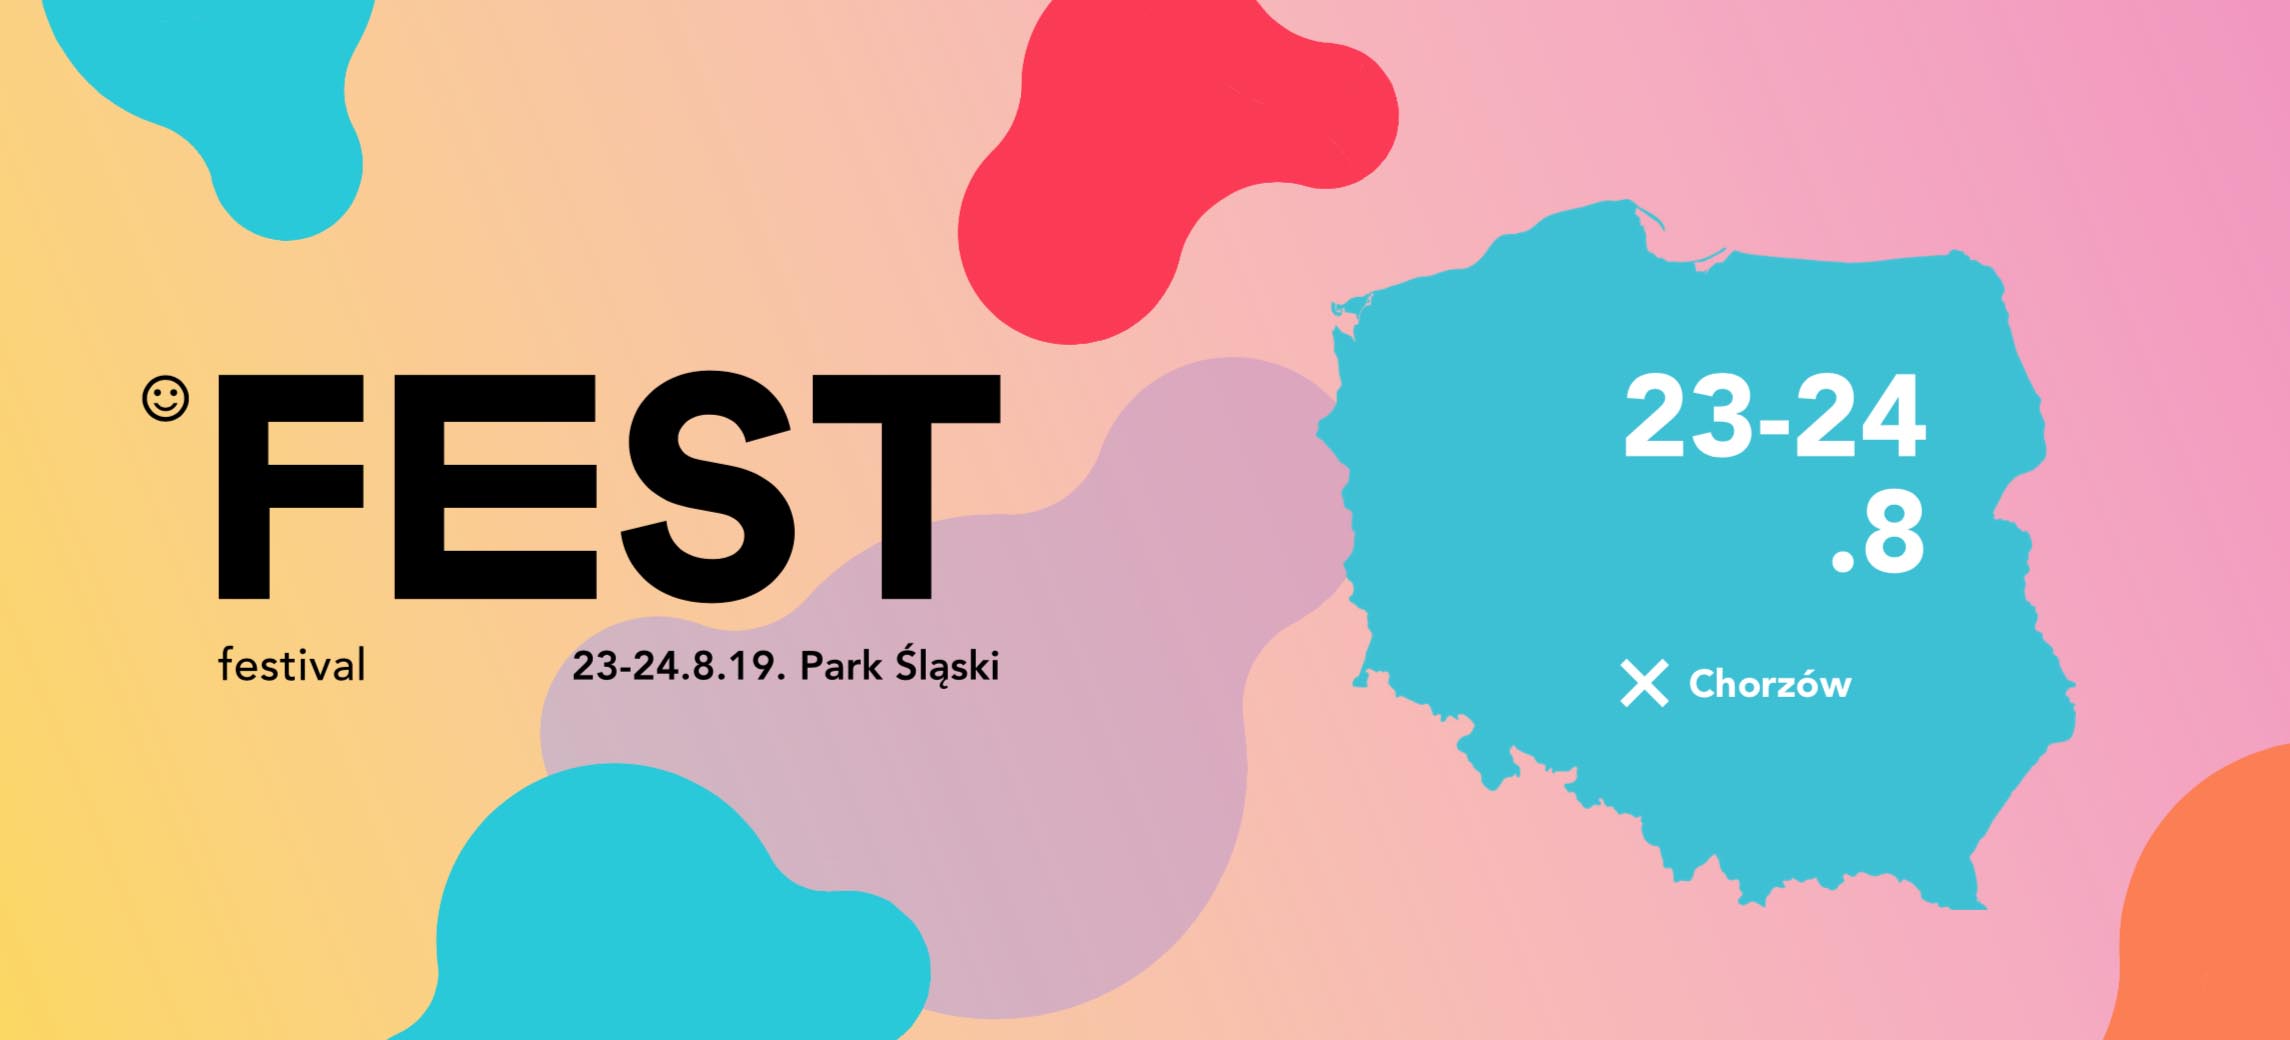 fest festival 2019